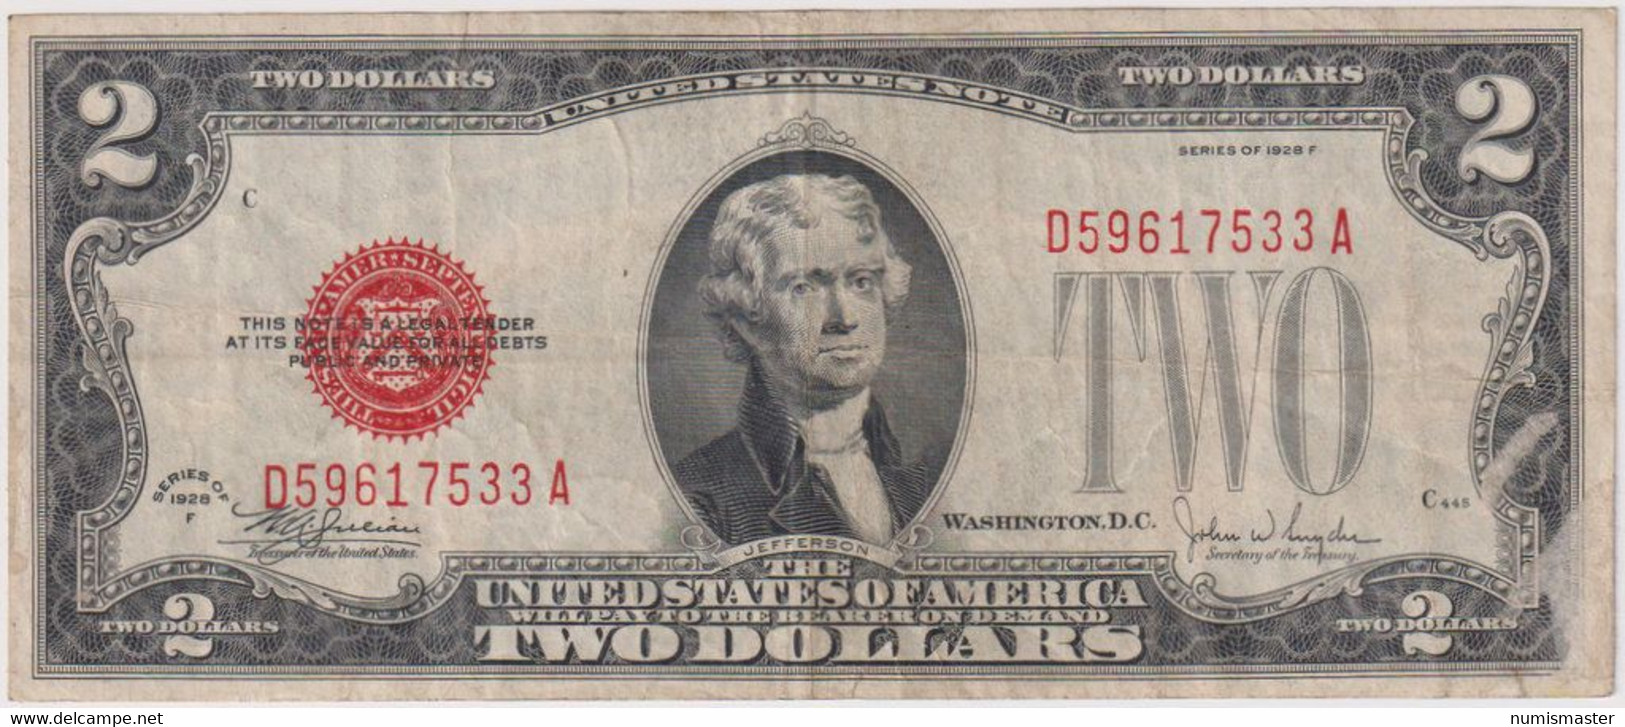 2 DOLLARS , U.S. NOTE SERIES 1928 F , RED SEAL - Billets Des États-Unis (1928-1953)